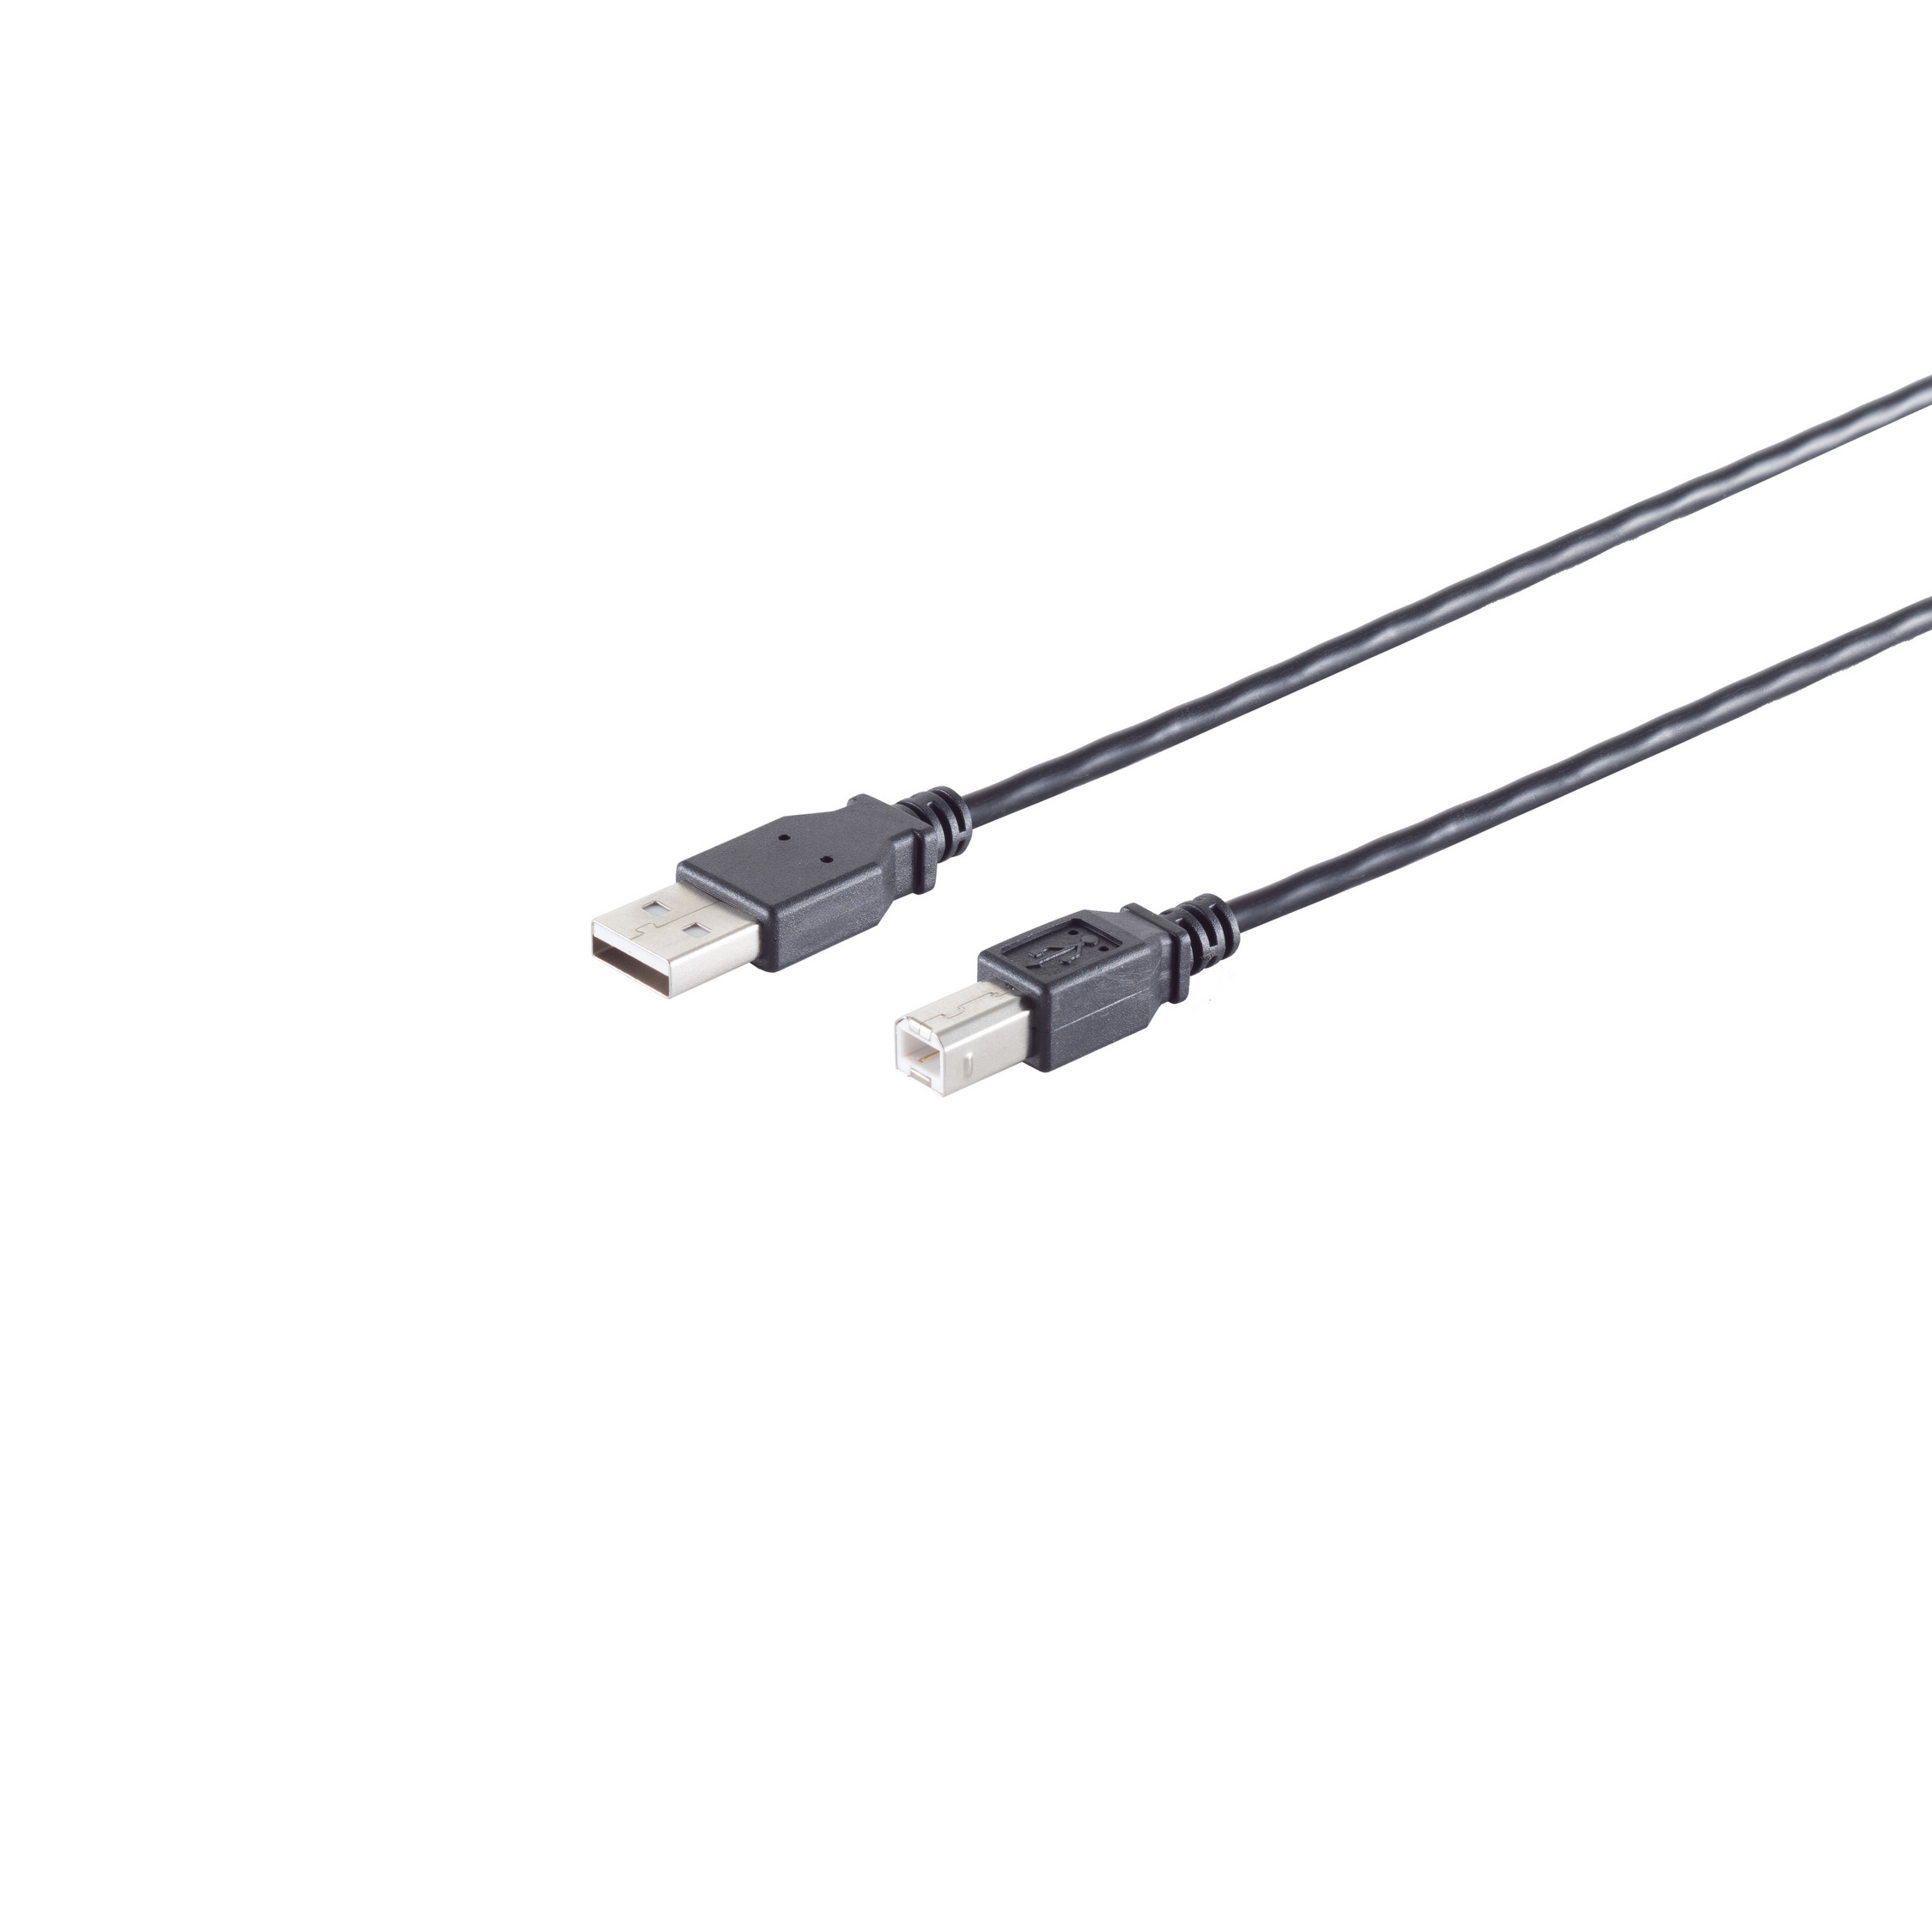 S/CONN MAXIMUM CONNECTIVITY USB-A 2.0, Kabel schwarz, USB-B, USB Adapterkabel, 0,25m